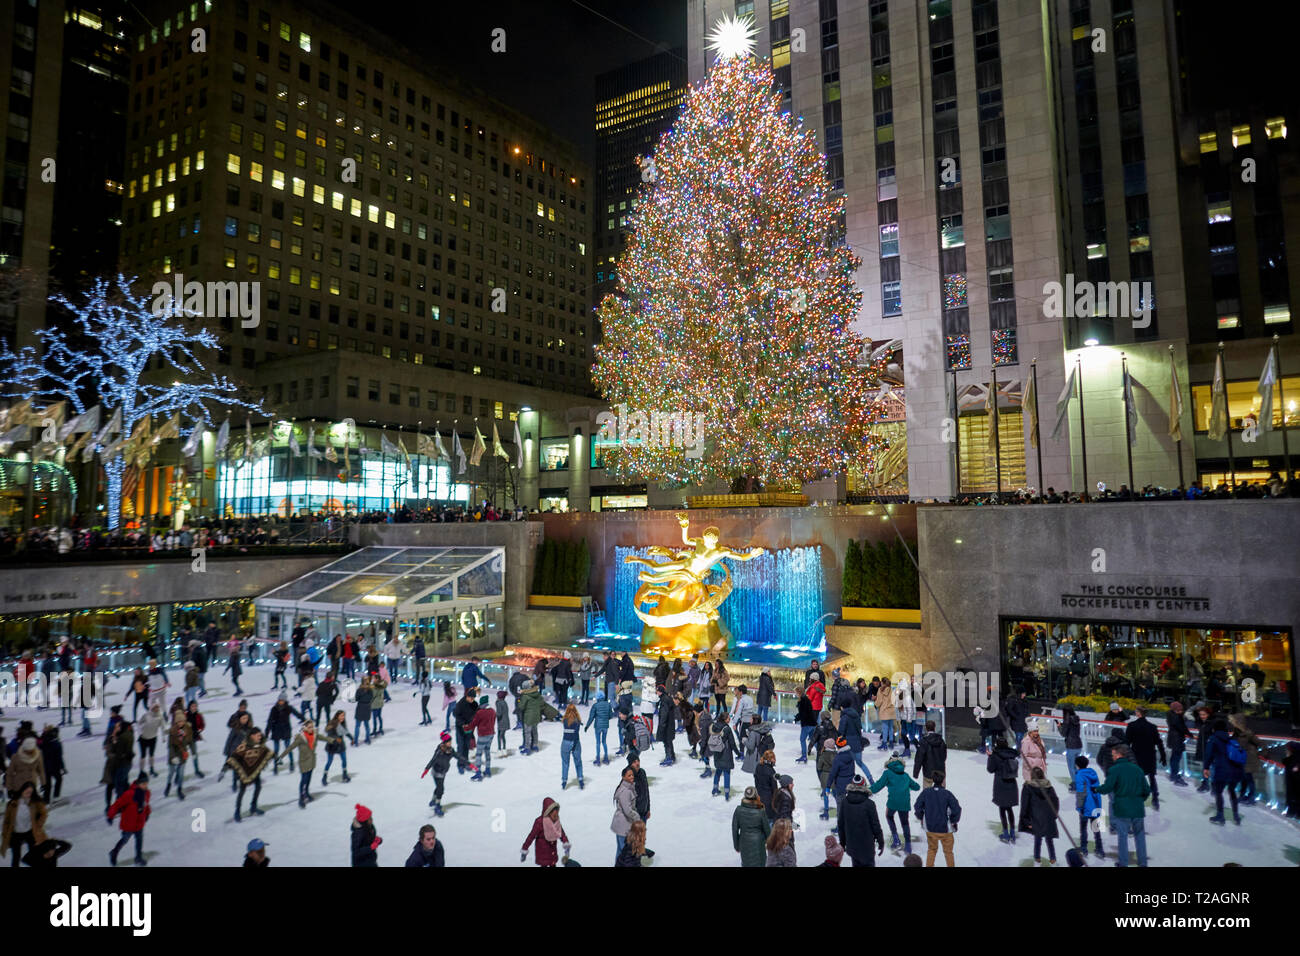 Weihnachtsschmuck Rockefeller Center Baum und außerhalb der Eisbahn, 5th Avenue, Manhattan, New York bei Nacht Stockfoto